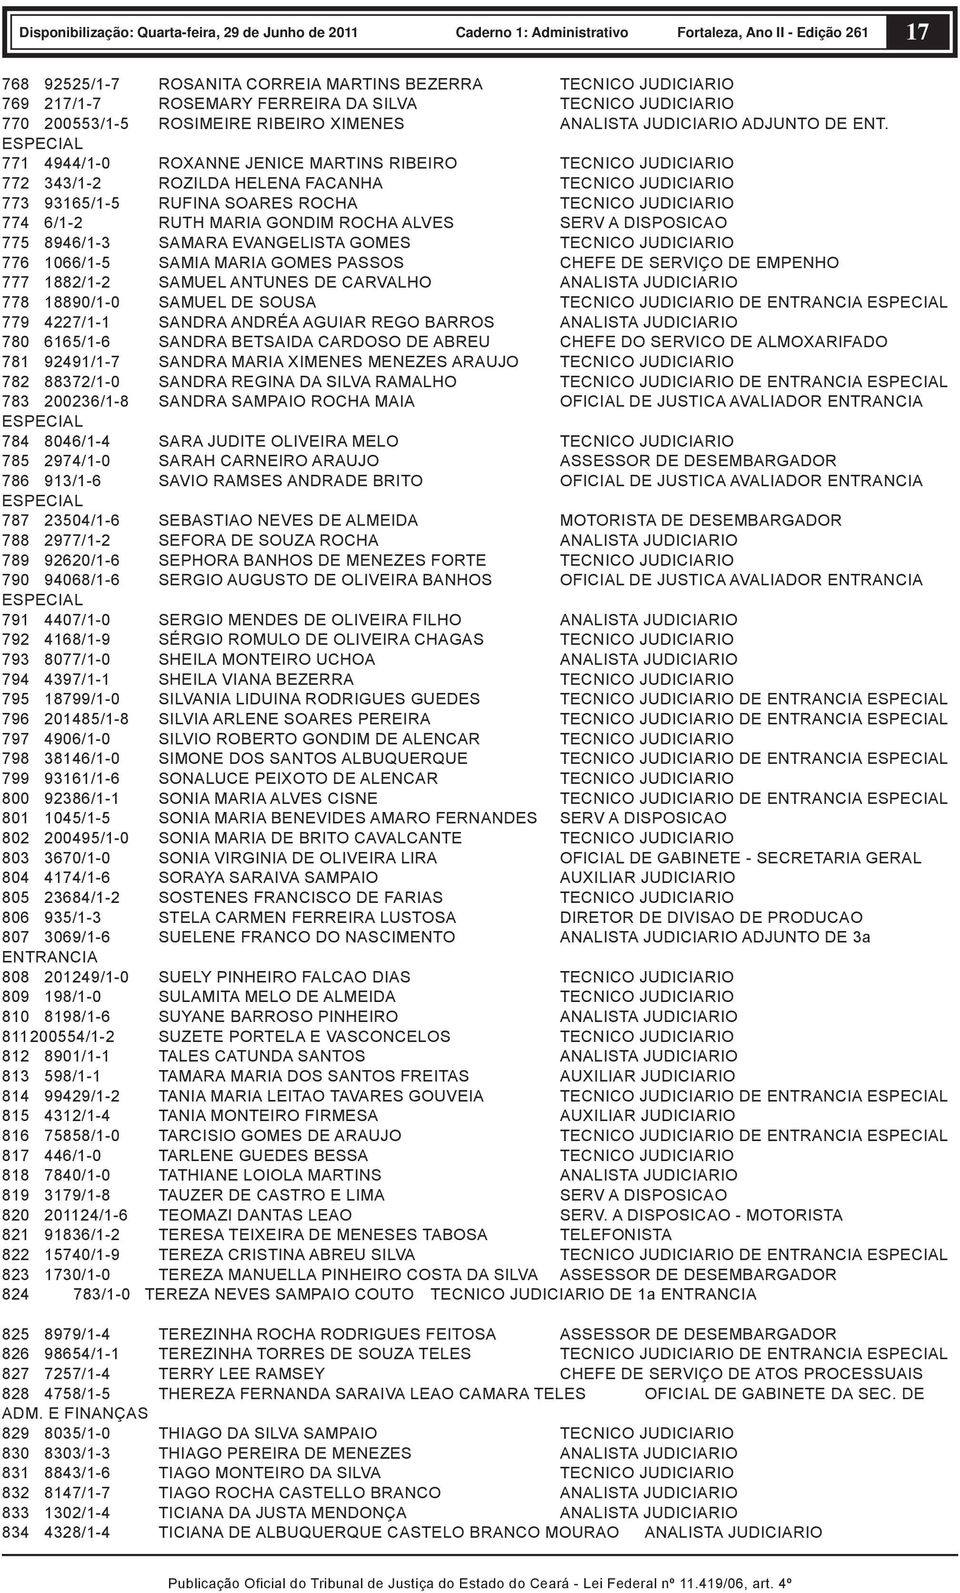 GONDIM ROCHA ALVES SERV A DISPOSICAO 775 8946/1-3 SAMARA EVANGELISTA GOMES TECNICO JUDICIARIO 776 1066/1-5 SAMIA MARIA GOMES PASSOS CHEFE DE SERVIÇO DE EMPENHO 777 1882/1-2 SAMUEL ANTUNES DE CARVALHO